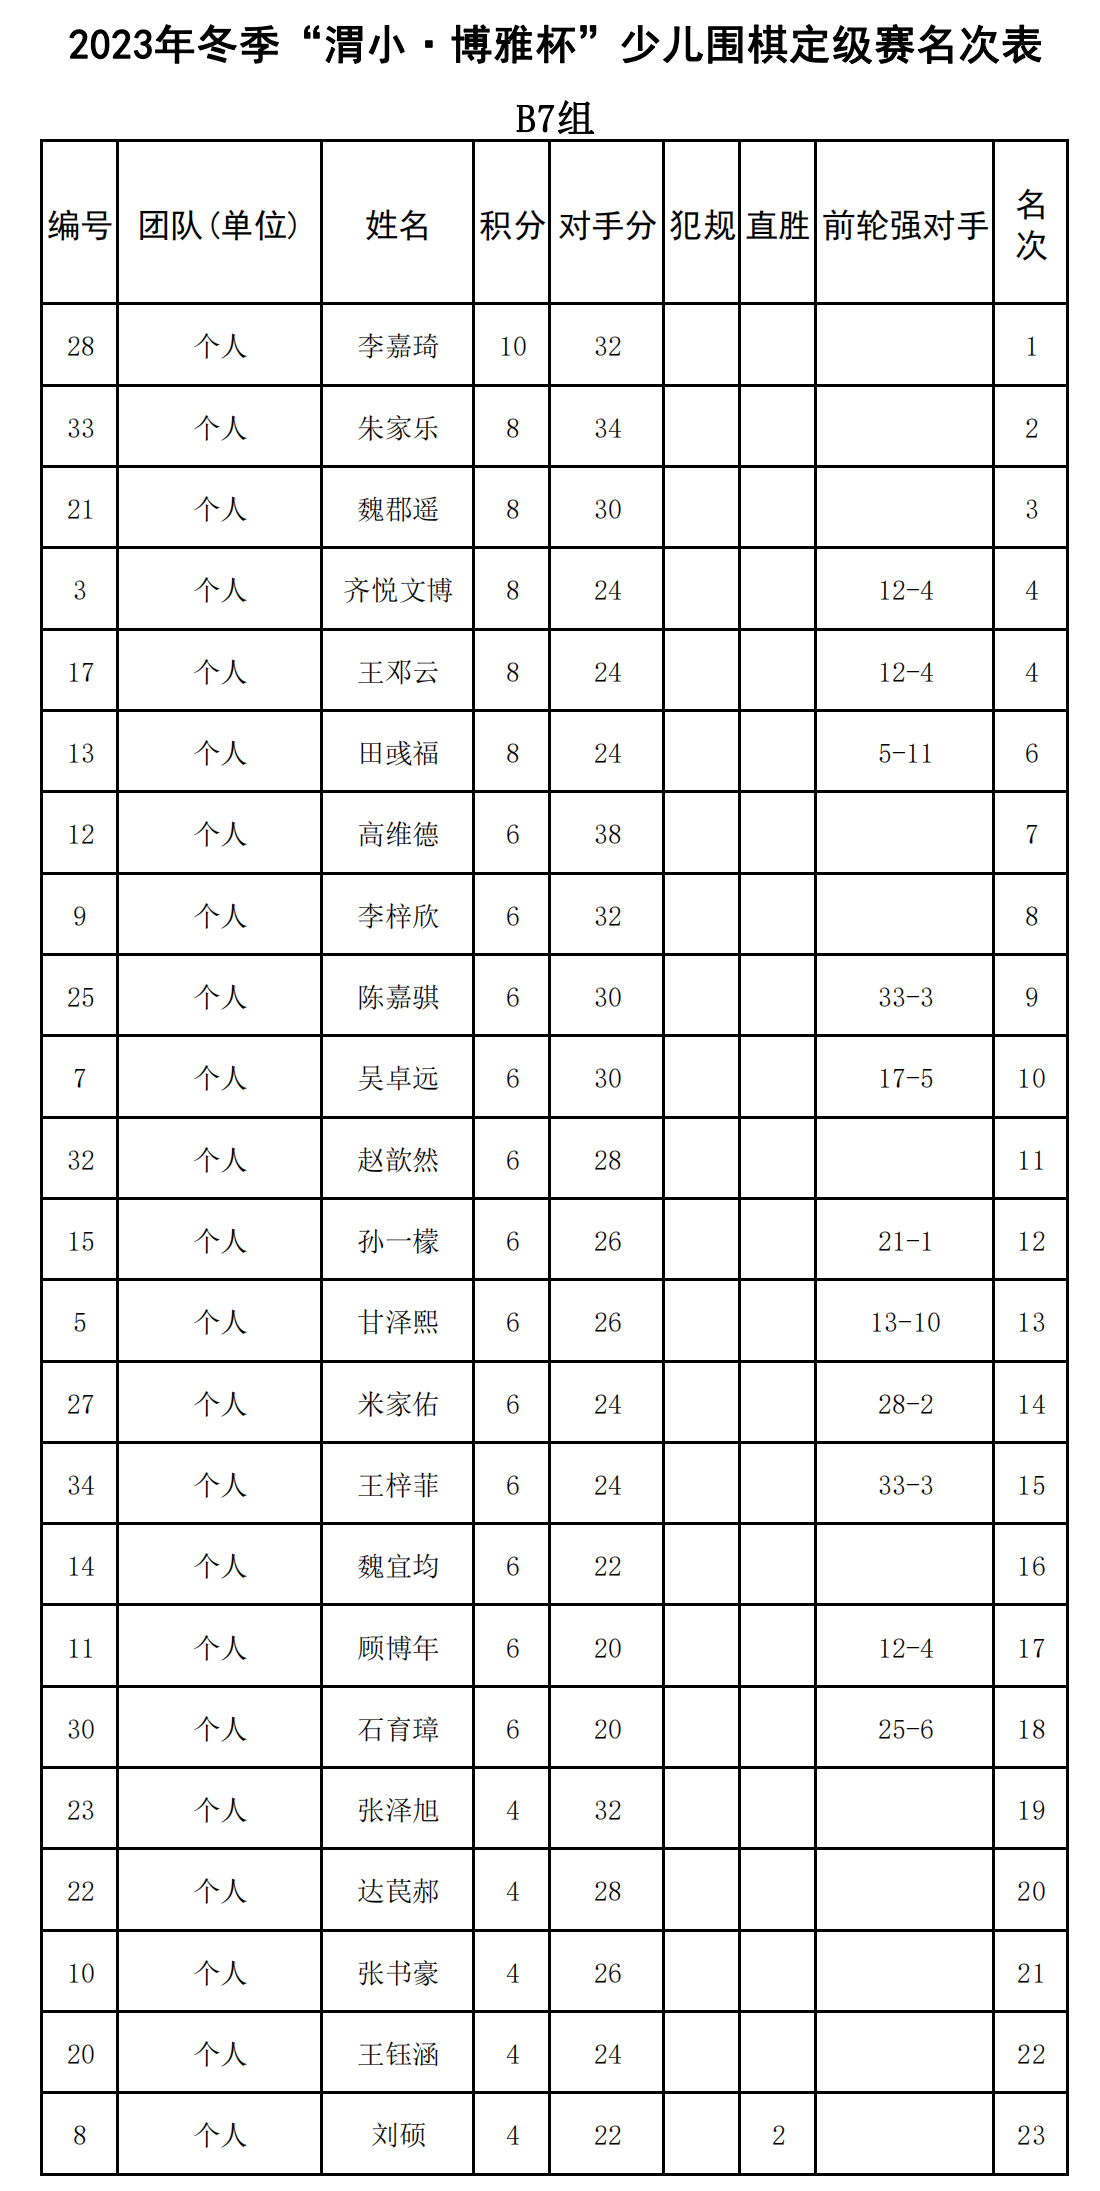 2023年冬季“渭小·博雅杯”少儿围棋定级赛B7组(名次表)_00.png